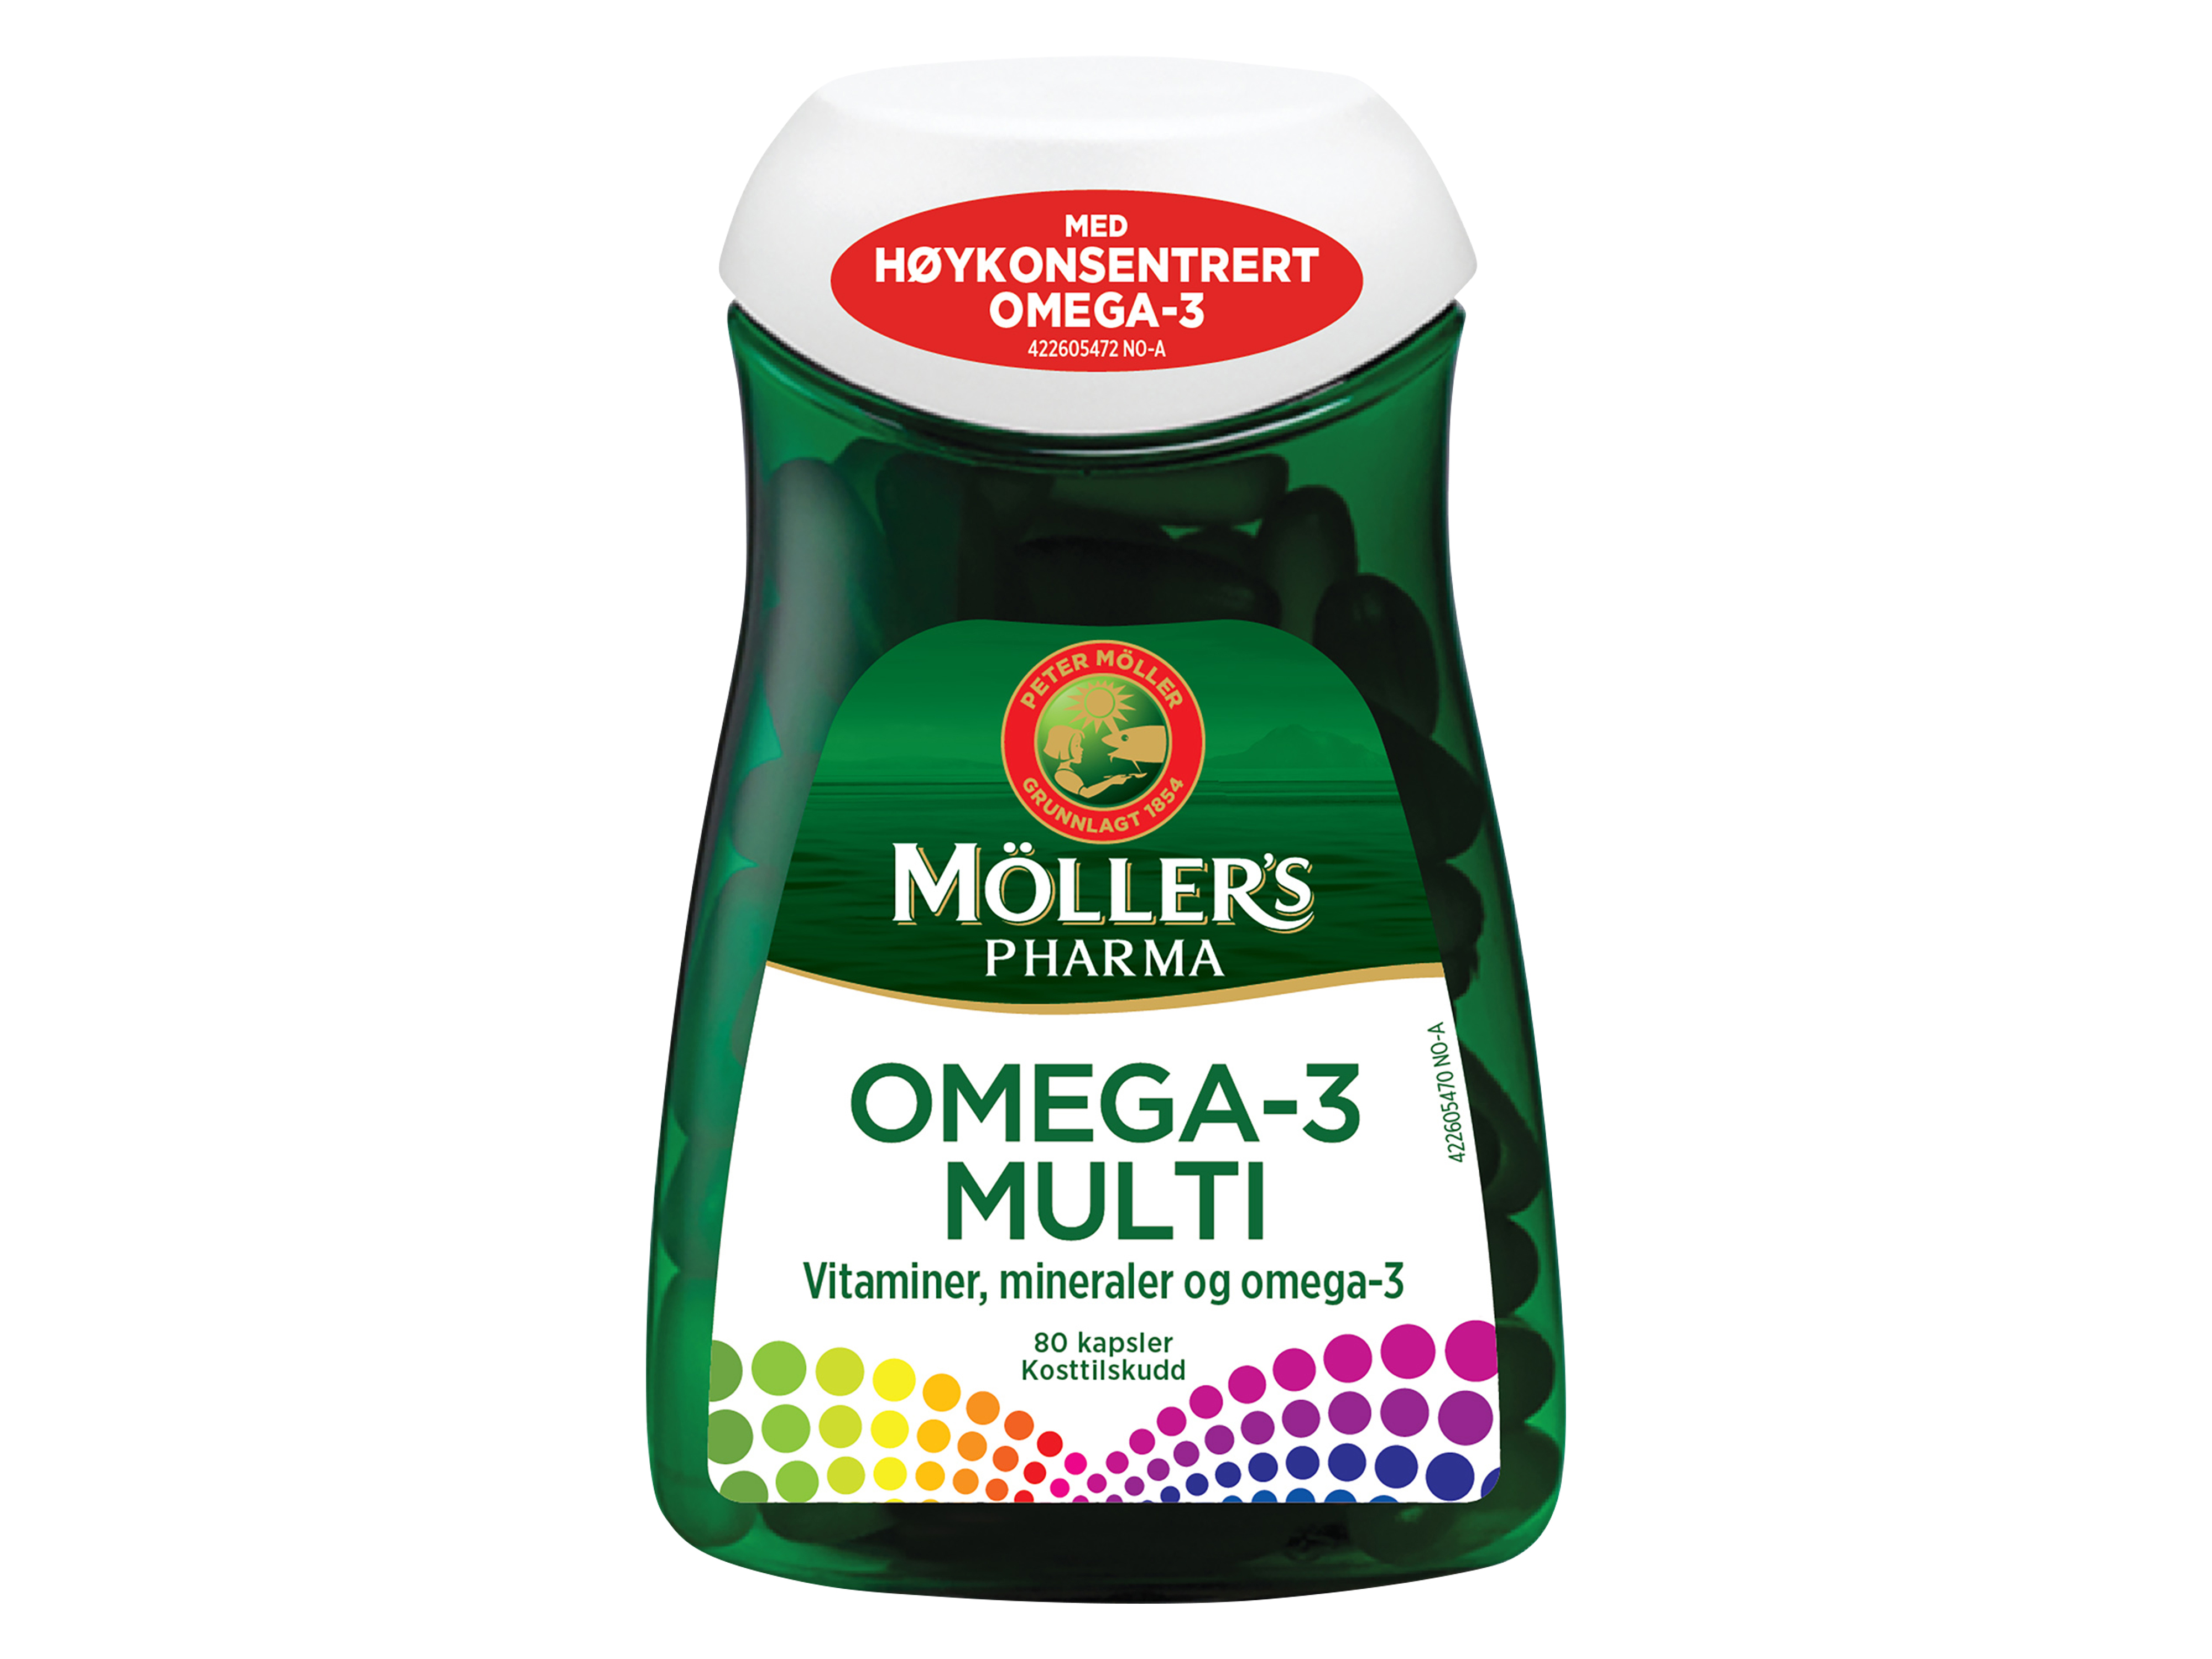 Möller's Pharma Omega-3 Multi, 80 kapsler